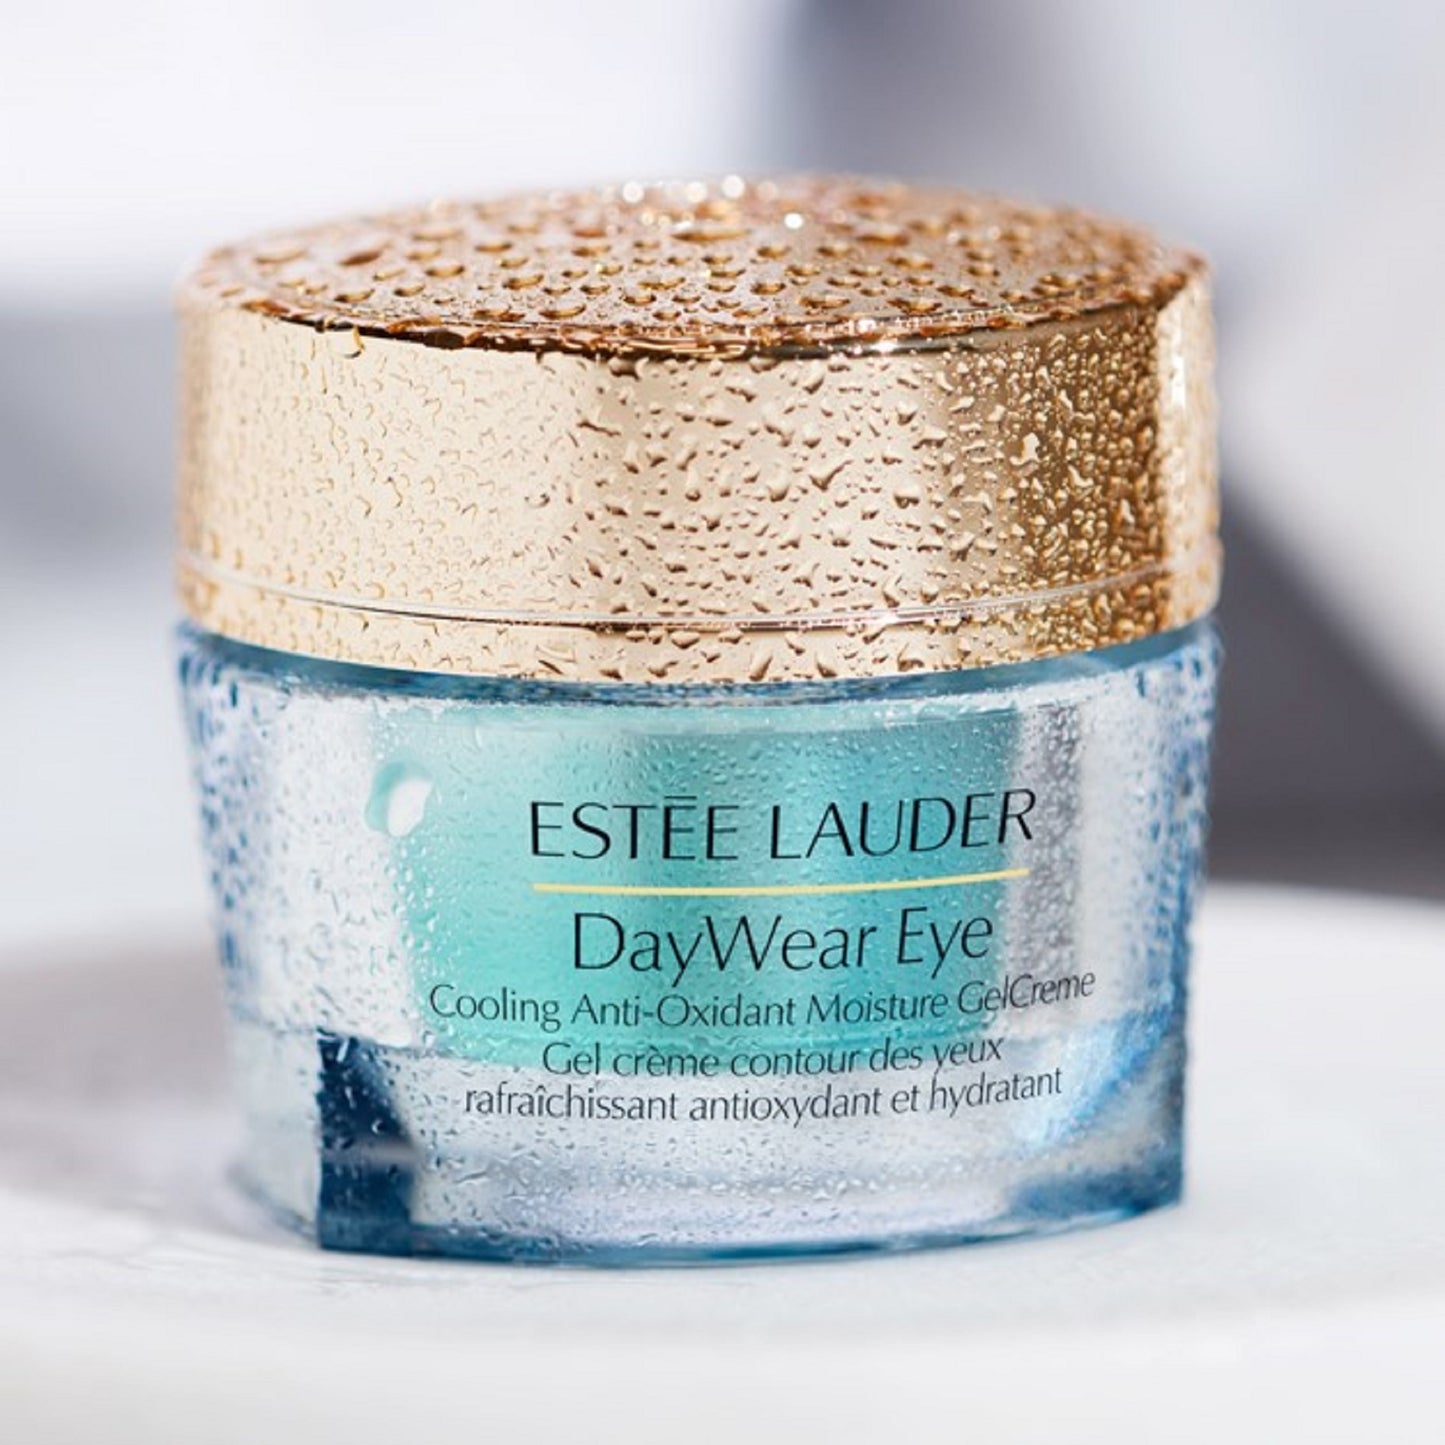 DayWear Eye Cooling Antioxidant Moisture Gel-Creme